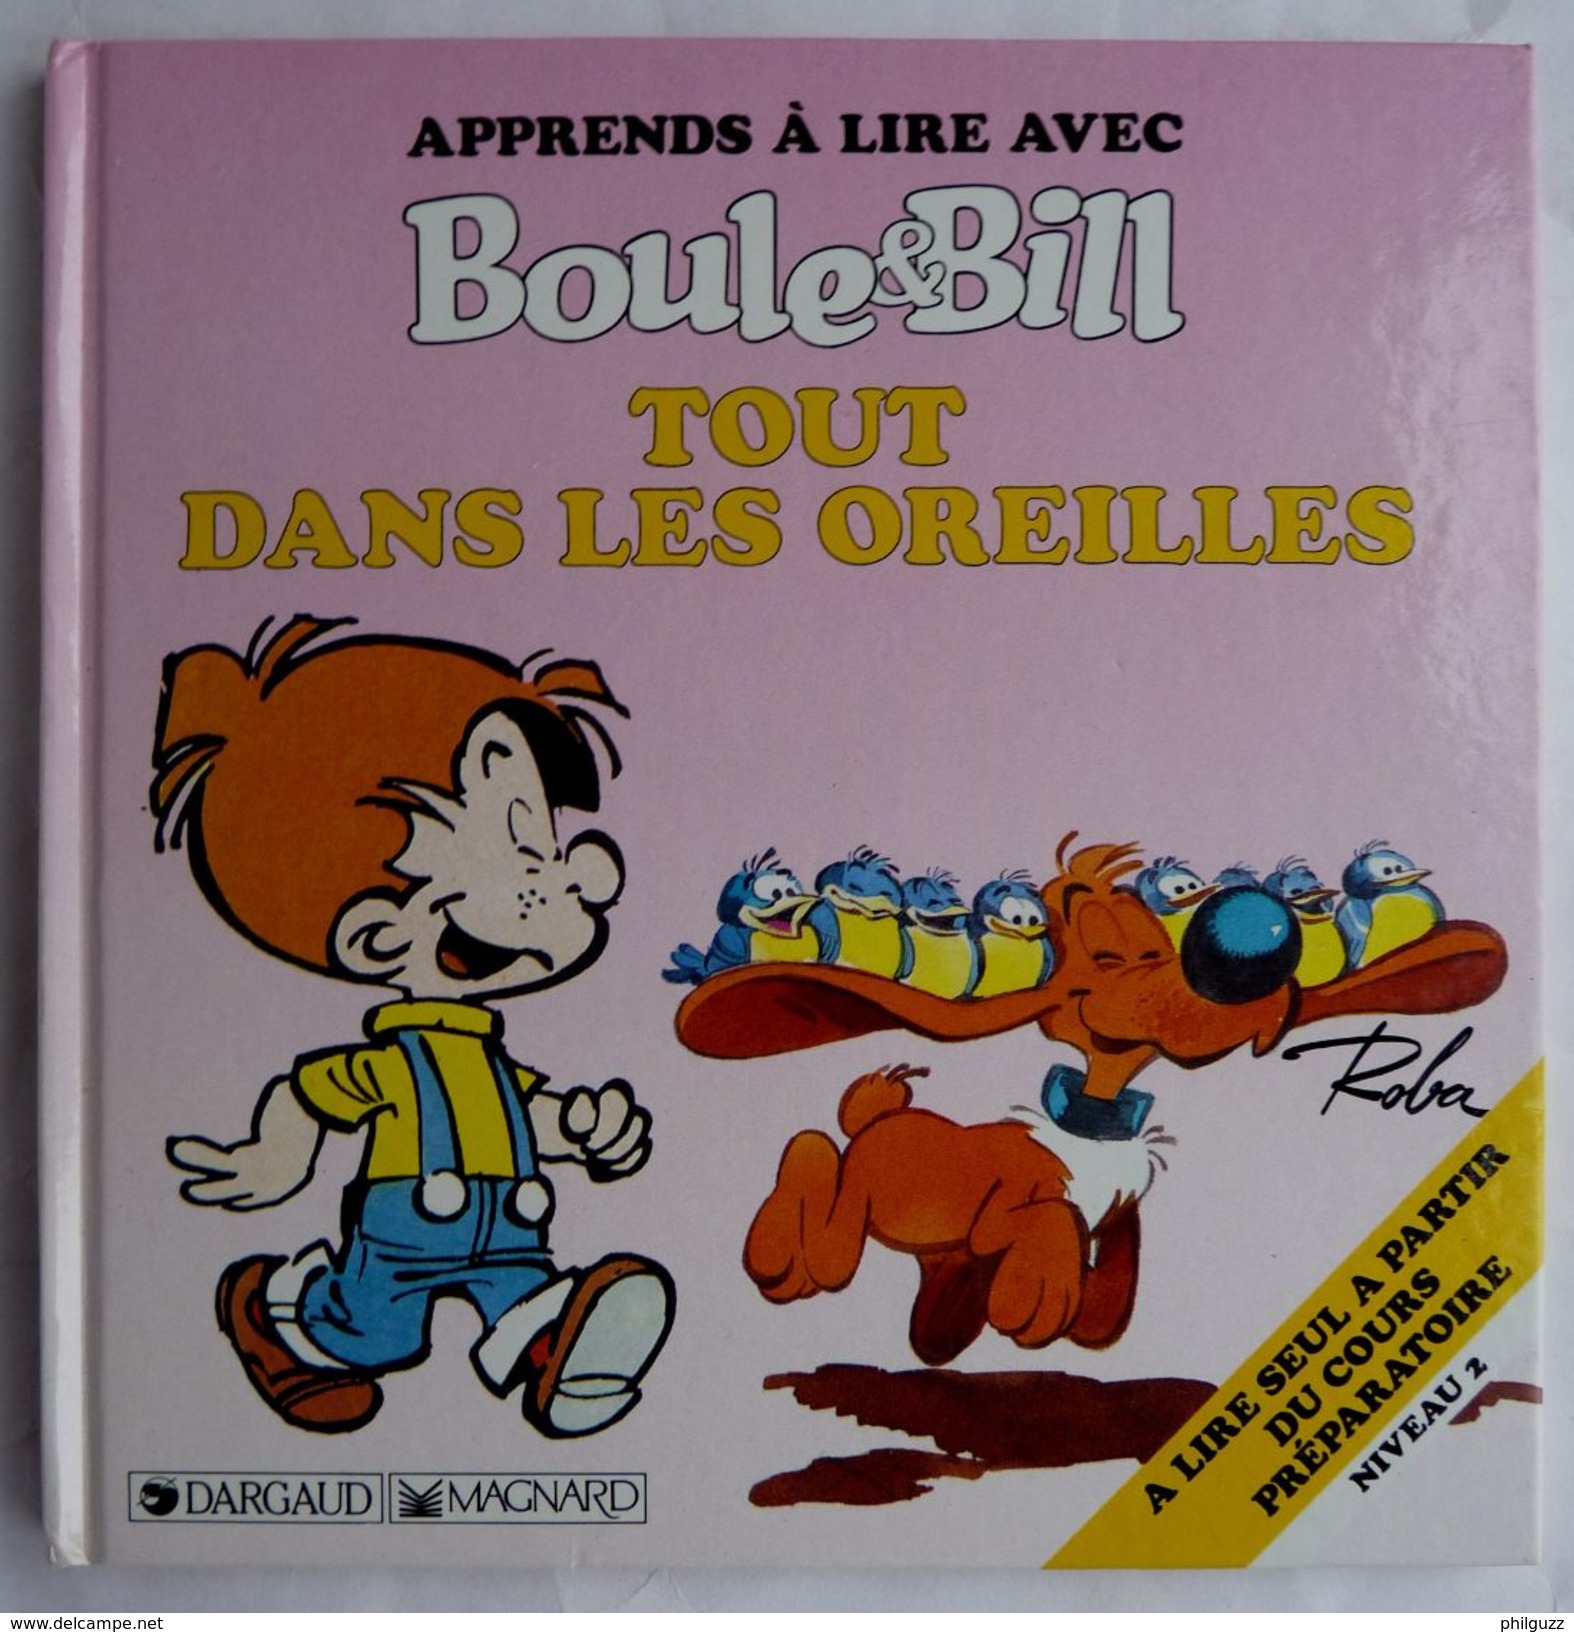 BOULE & BILL - APPRENDS A LIRE AVEC - TOUT DANS LES OREILLES - 1990 -  ROBA - DARGAUD MAGNARD (1) - Boule Et Bill